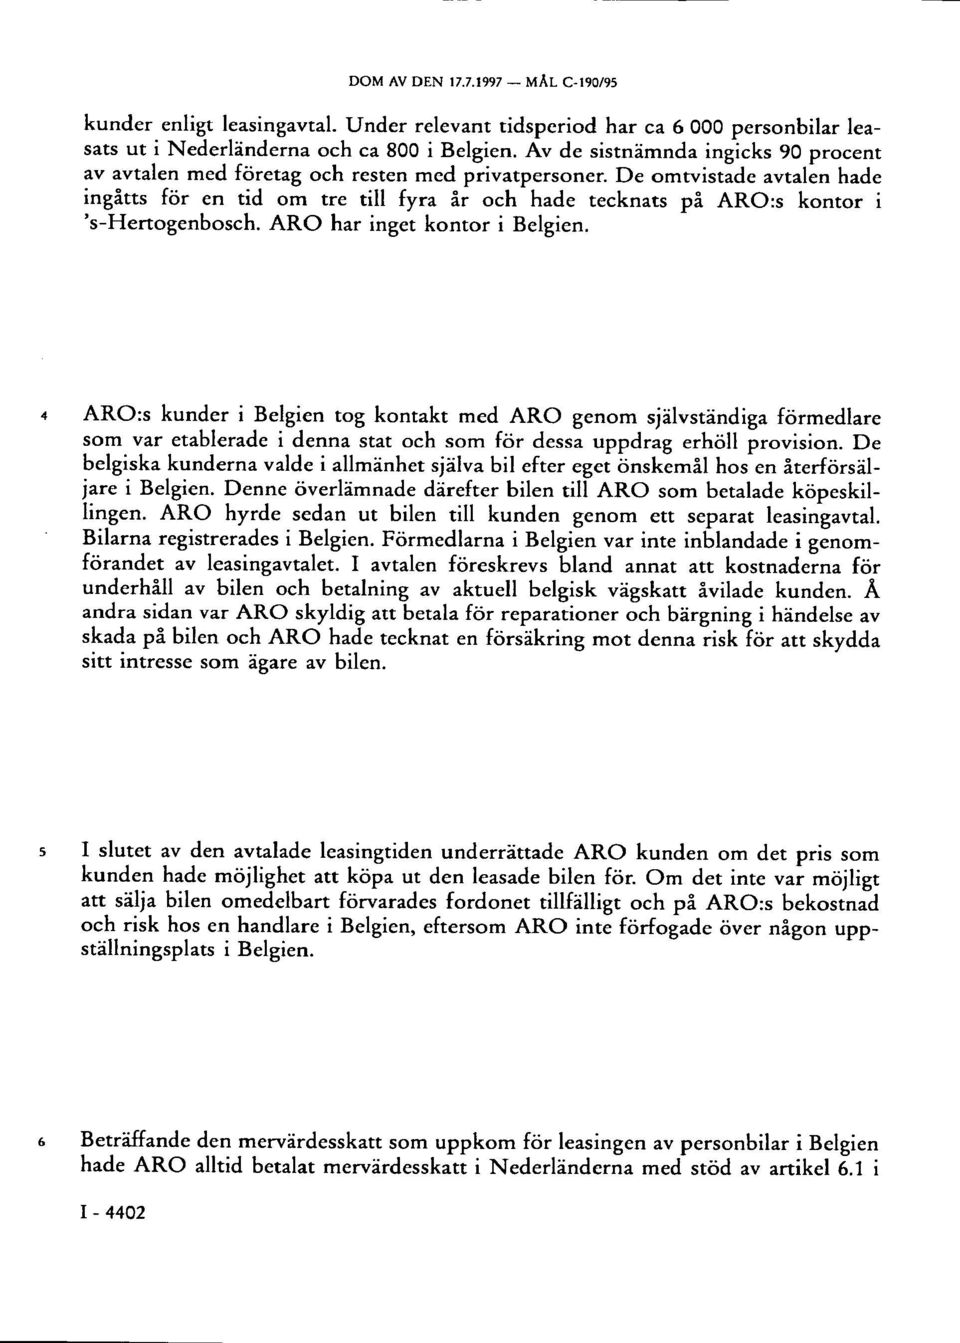 De omtvistade avtalen hade ingåtts för en tid om tre till fyra år och hade tecknats på ARO:s kontor i 's-hertogenbosch. ARO har inget kontor i Belgien.